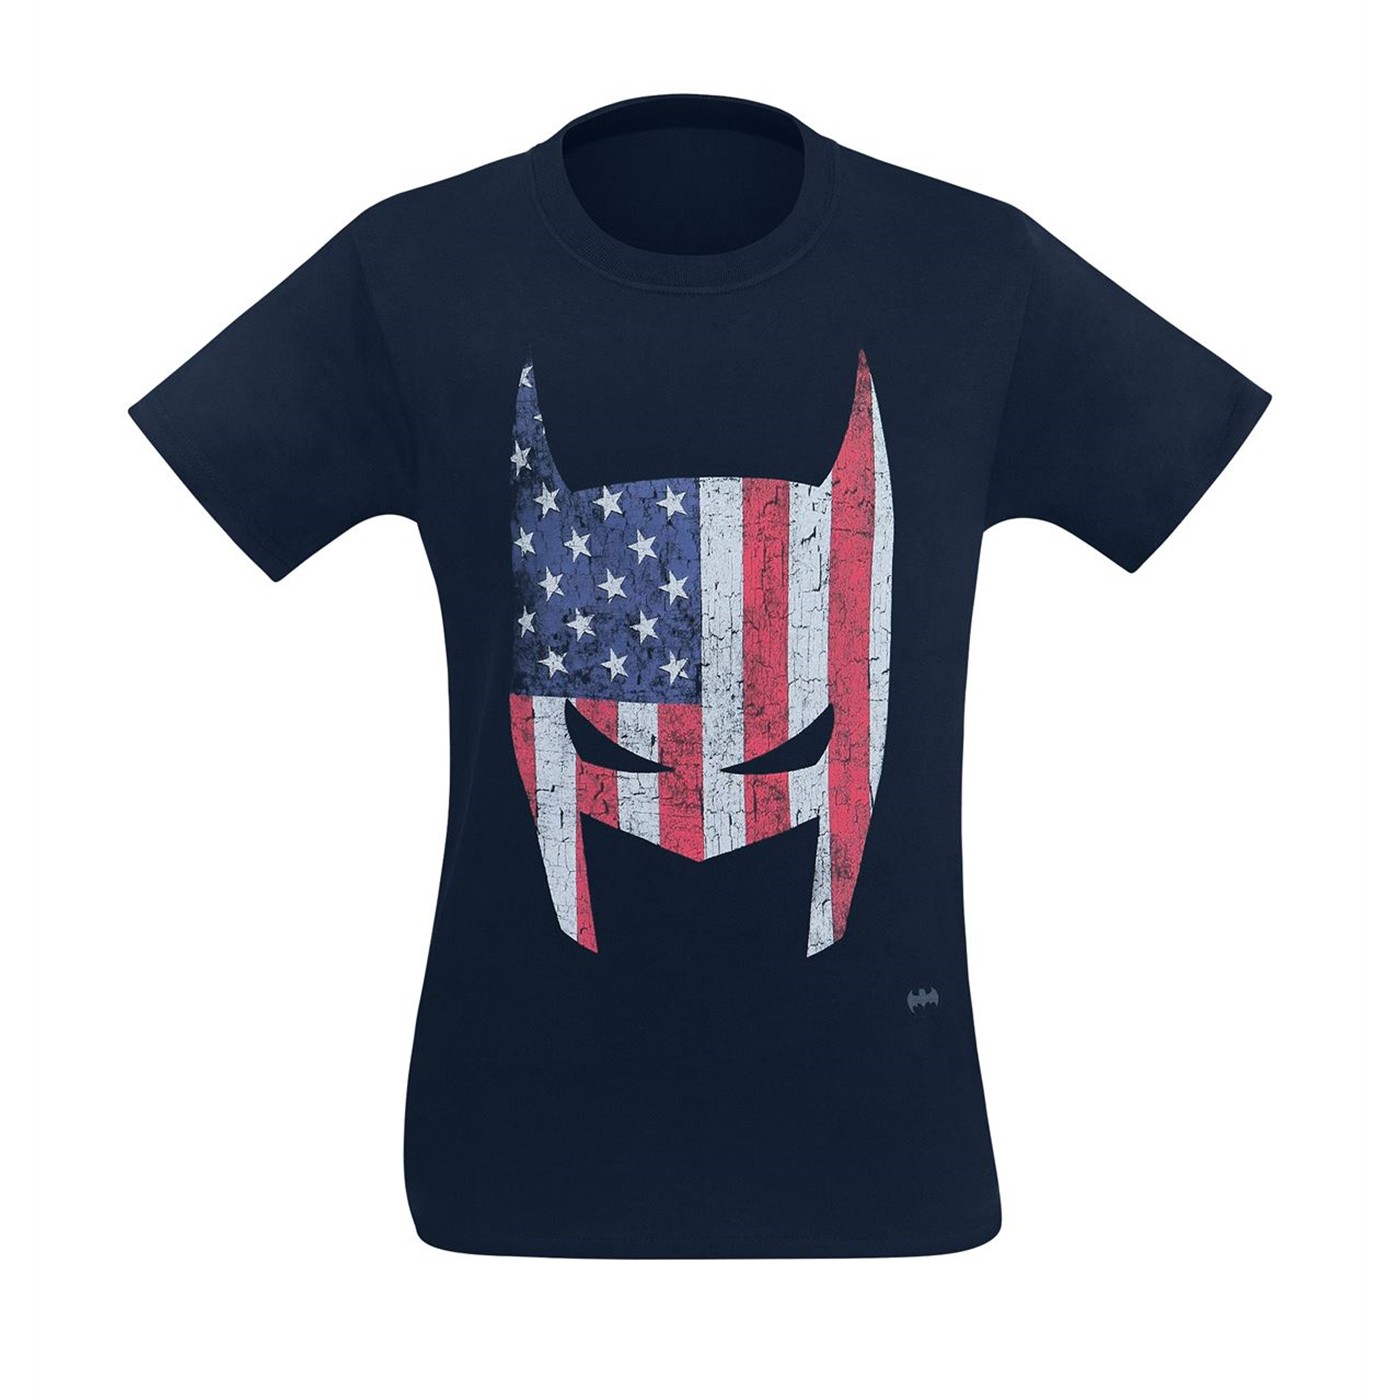 Batman American Cowl Men's T-Shirt